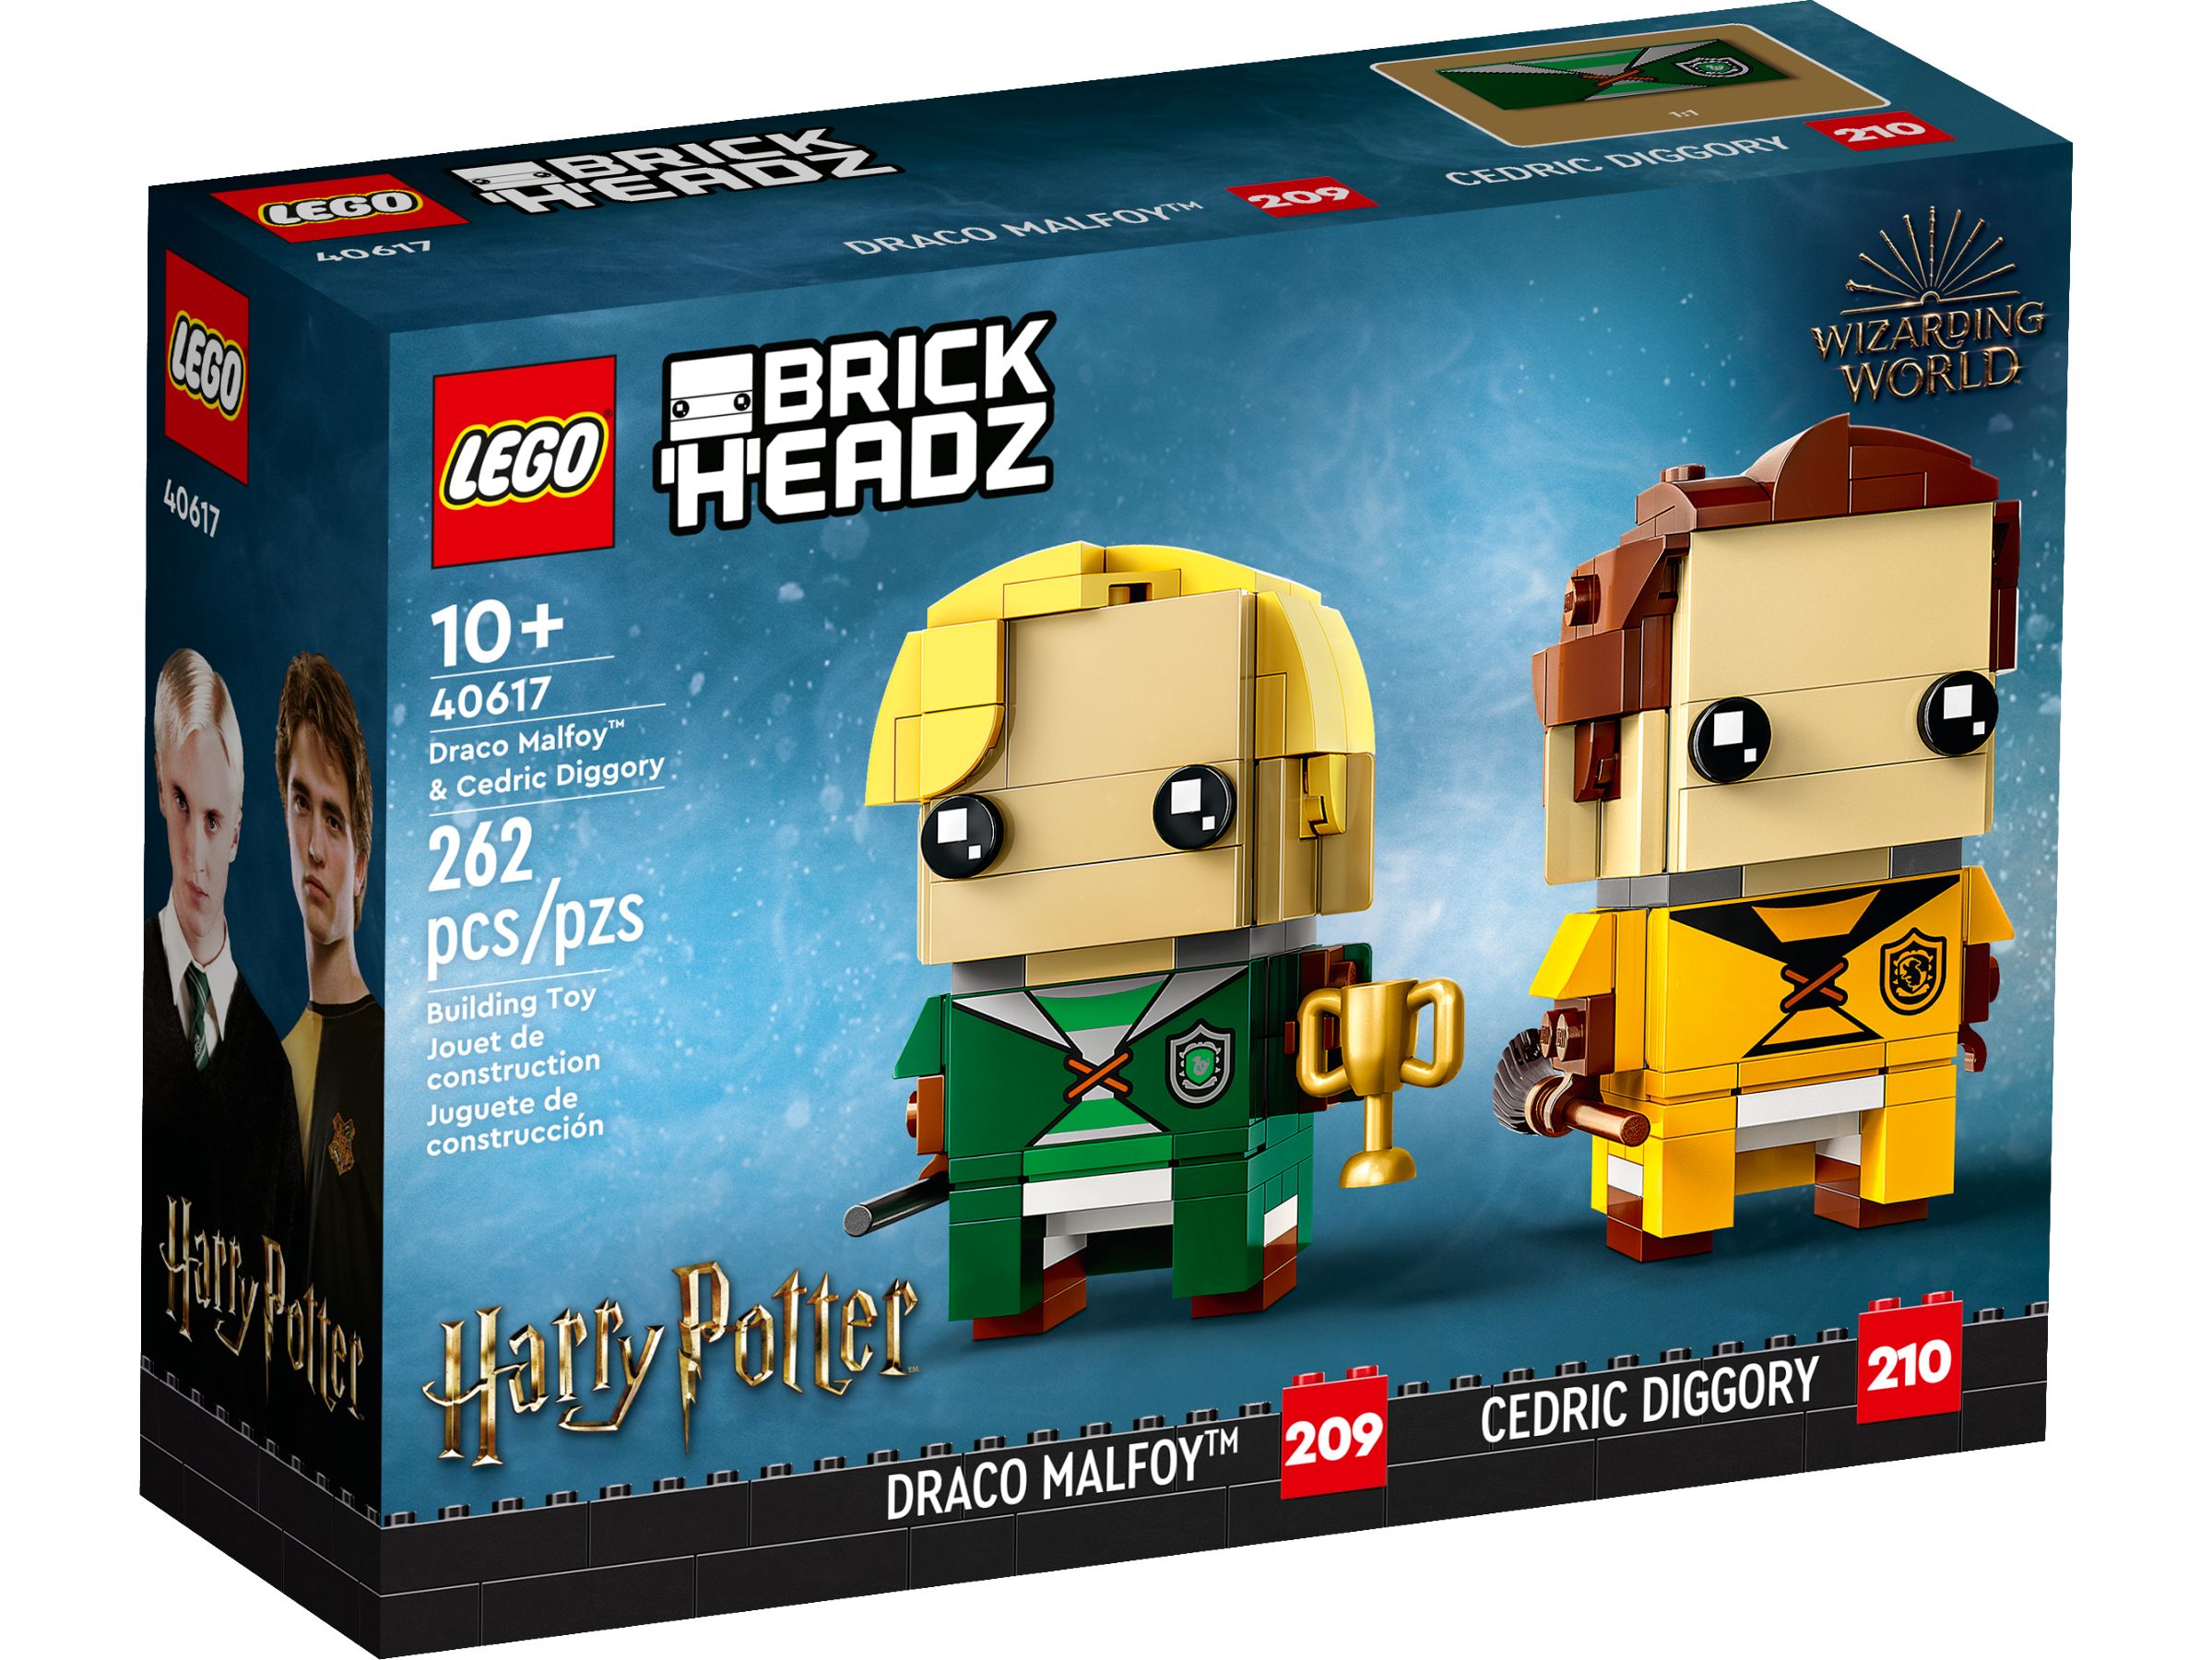 LEGO BrickHeadz 40617 Draco Malfoy™ & Cedric Diggory LEGO_40617_alt1.jpg